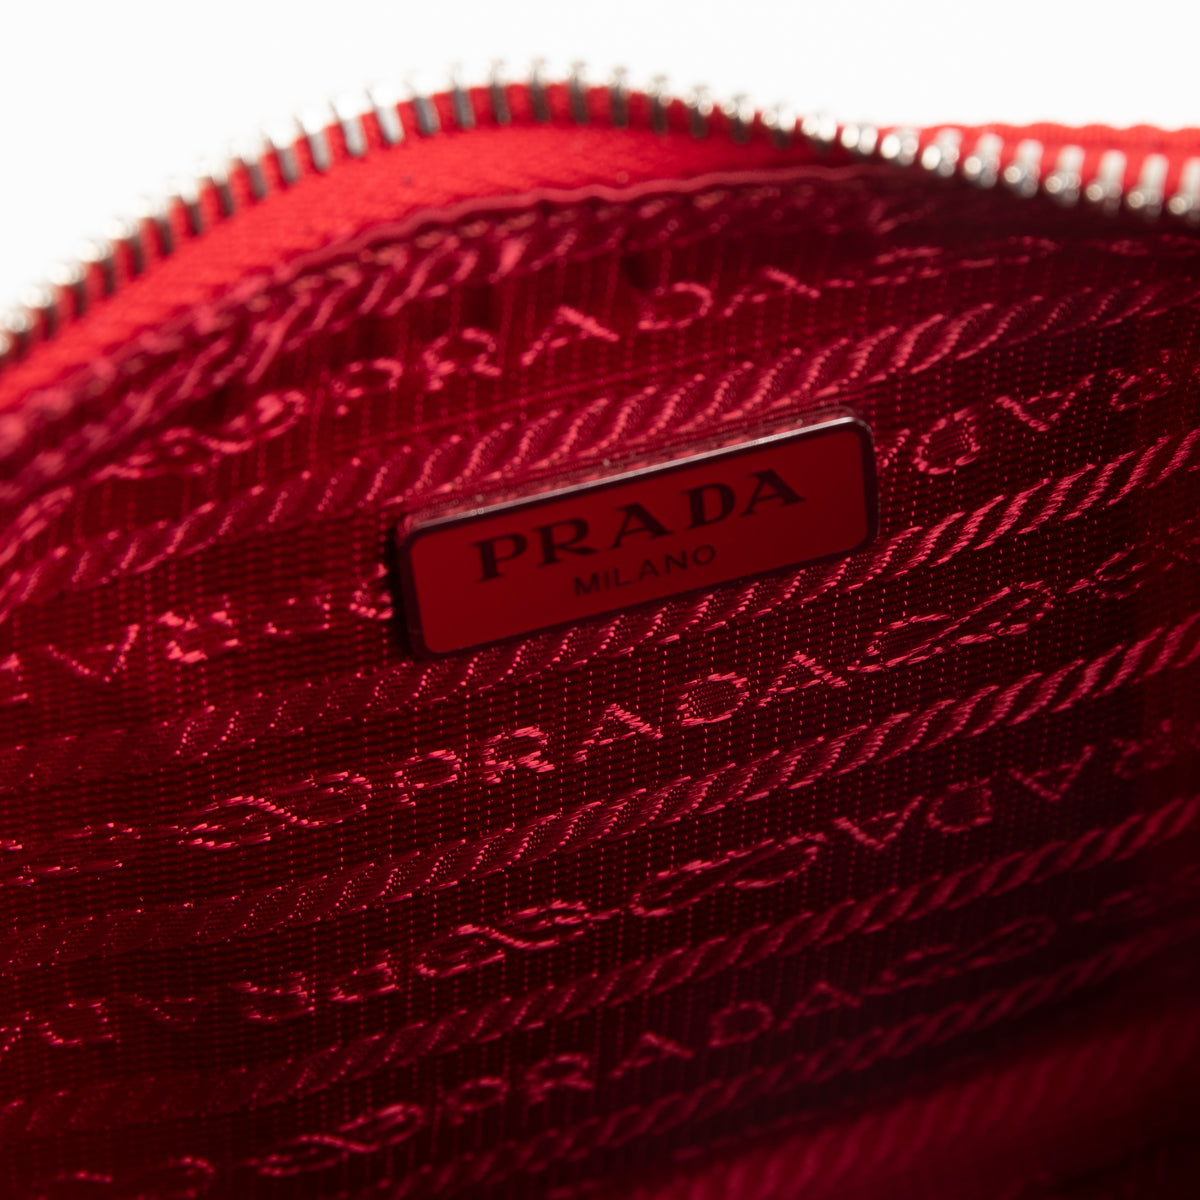 Prada Re Edition 2005 Bag Review & Comparison to Multi Pochette